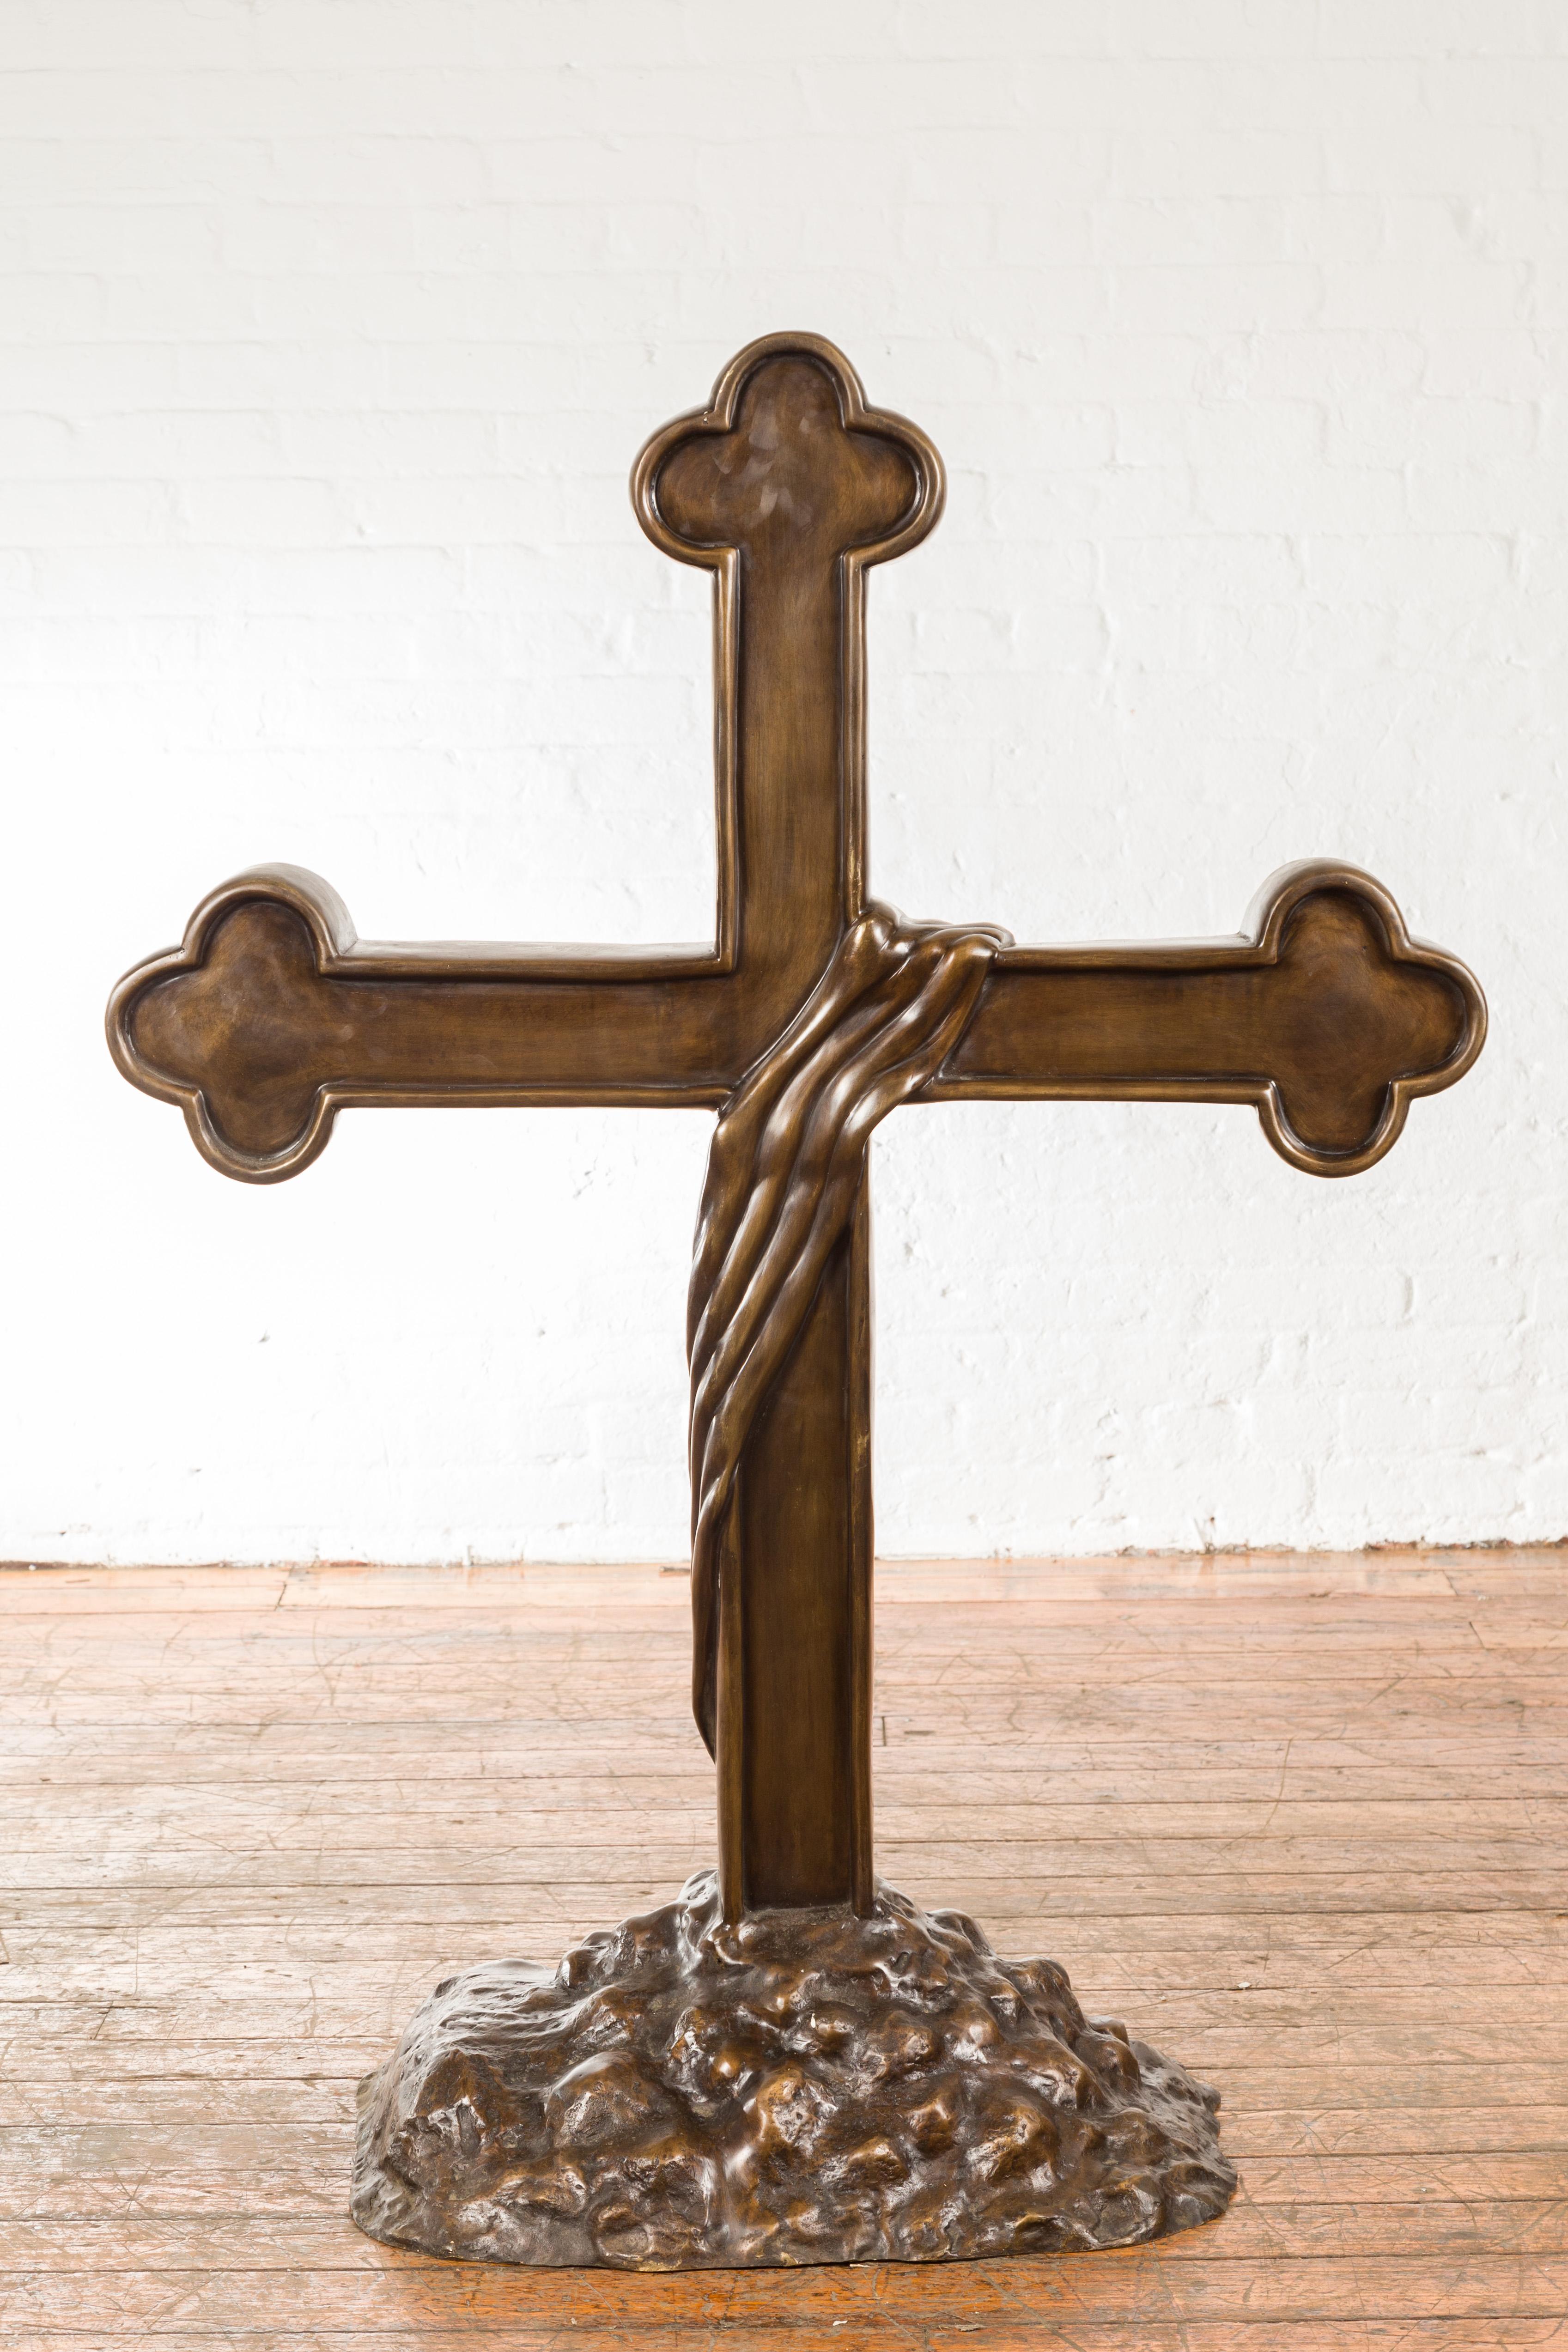 Croix religieuse contemporaine en bronze à cire perdue, aux extrémités triplées et à la base rocheuse. Créée avec la technique traditionnelle de la cire perdue (à la cire Perdue) qui permet une grande précision et finesse dans les détails, cette